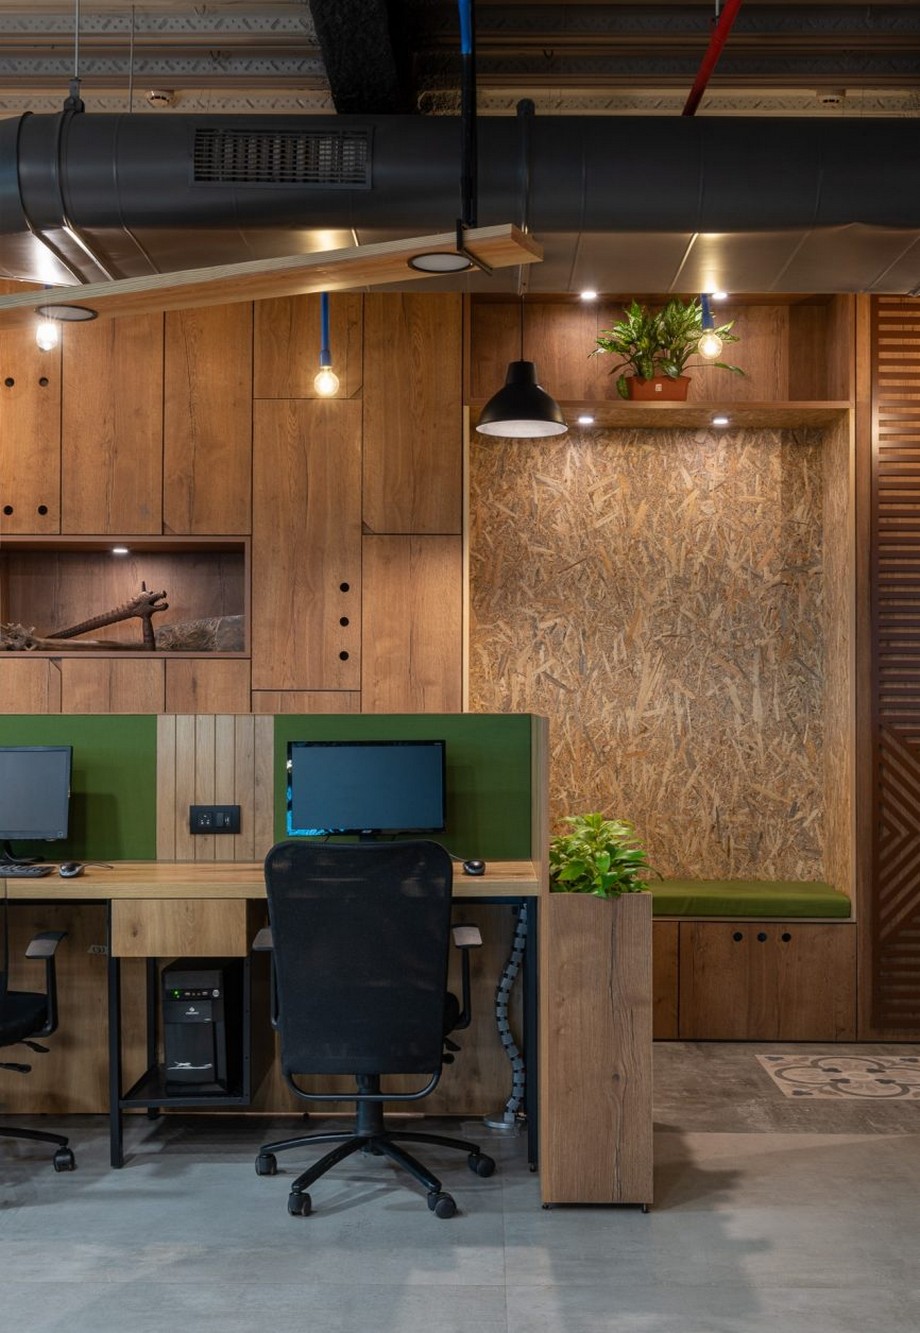 Ngắm nhìn dự án thiết kế nội thất văn phòng lấy cảm hứng từ vật liệu gỗ tự nhiên > thiết kế nội thất văn phòng lấy cảm hứng từ vật liệu gỗ tự nhiên